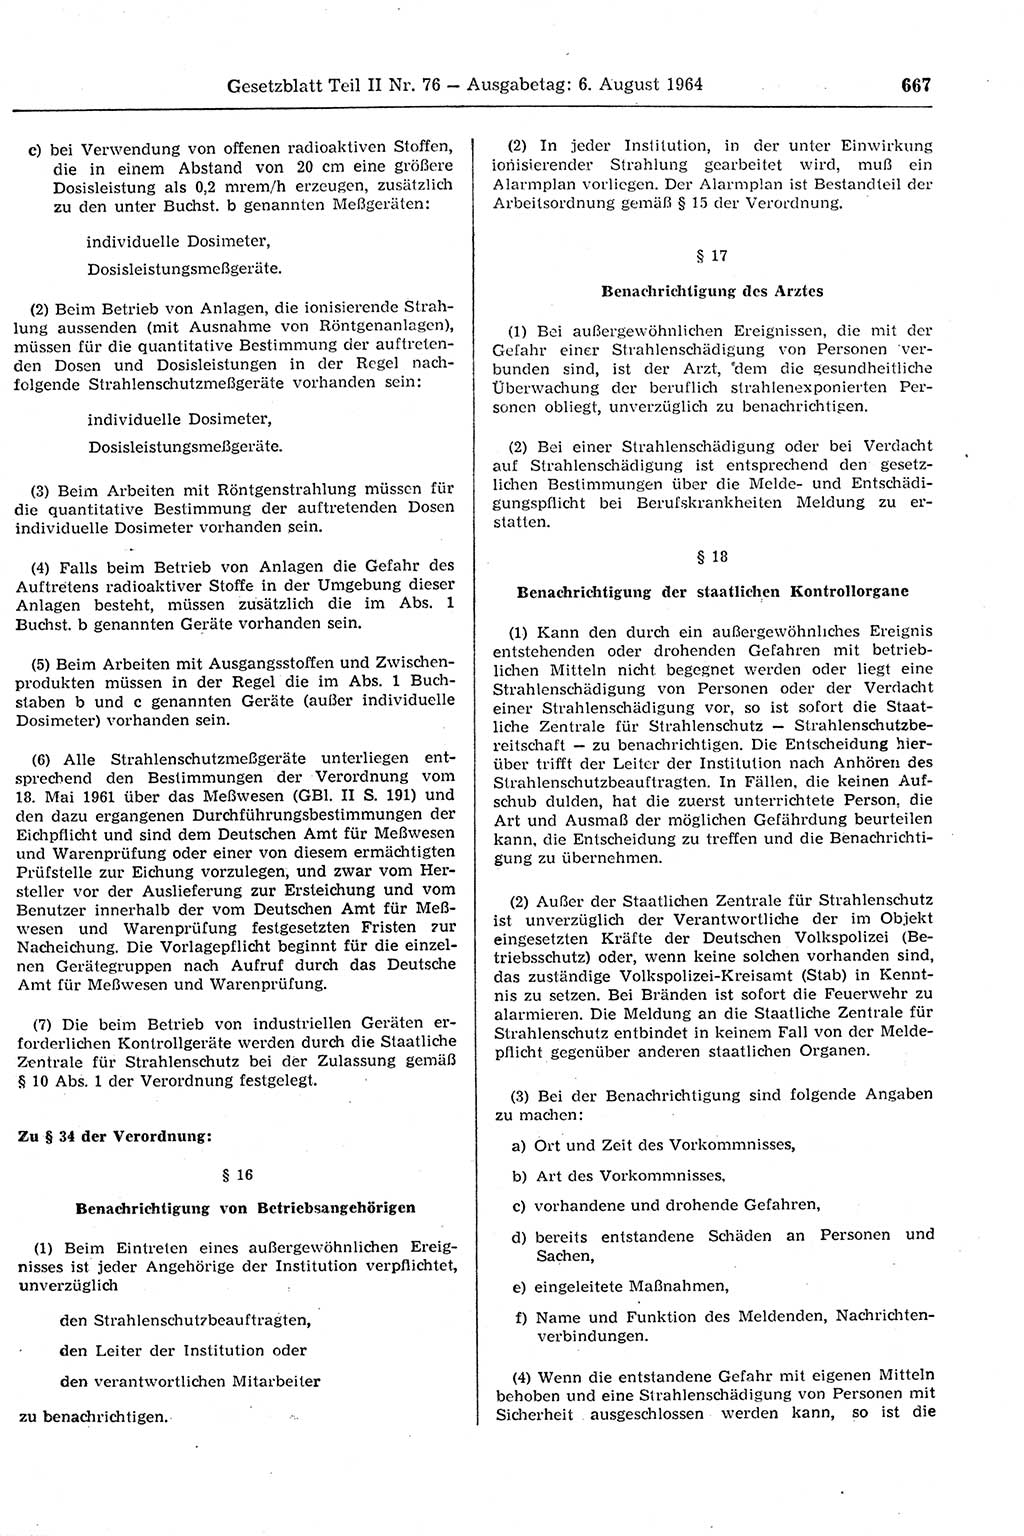 Gesetzblatt (GBl.) der Deutschen Demokratischen Republik (DDR) Teil ⅠⅠ 1964, Seite 667 (GBl. DDR ⅠⅠ 1964, S. 667)